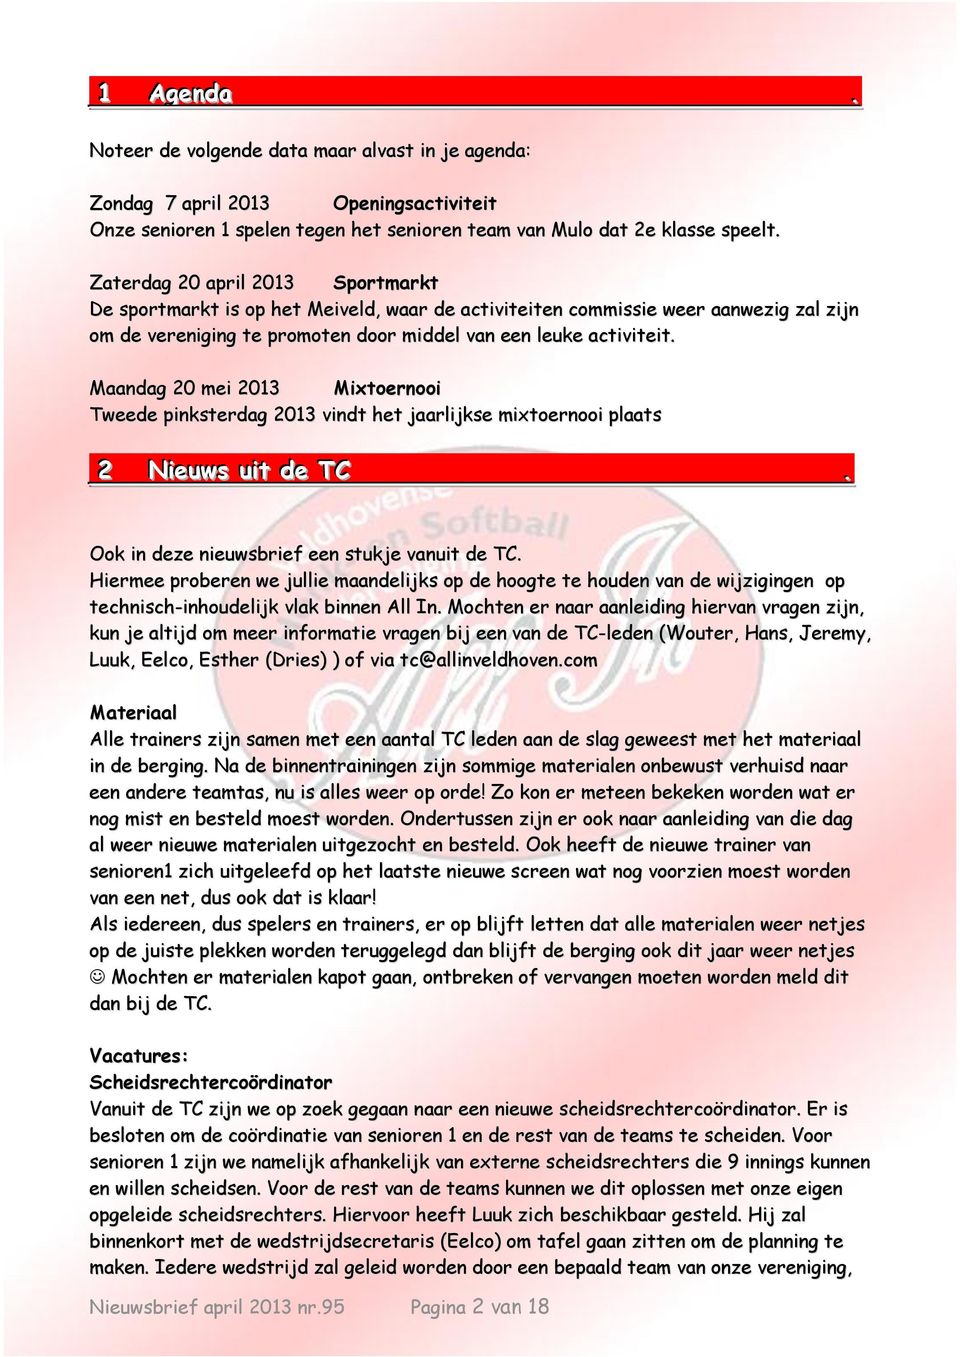 Maandag 20 mei 2013 Mixtoernooi Tweede pinksterdag 2013 vindt het jaarlijkse mixtoernooi plaats 2 Niieuws uiit de TC.. Ook in deze nieuwsbrief een stukje vanuit de TC.